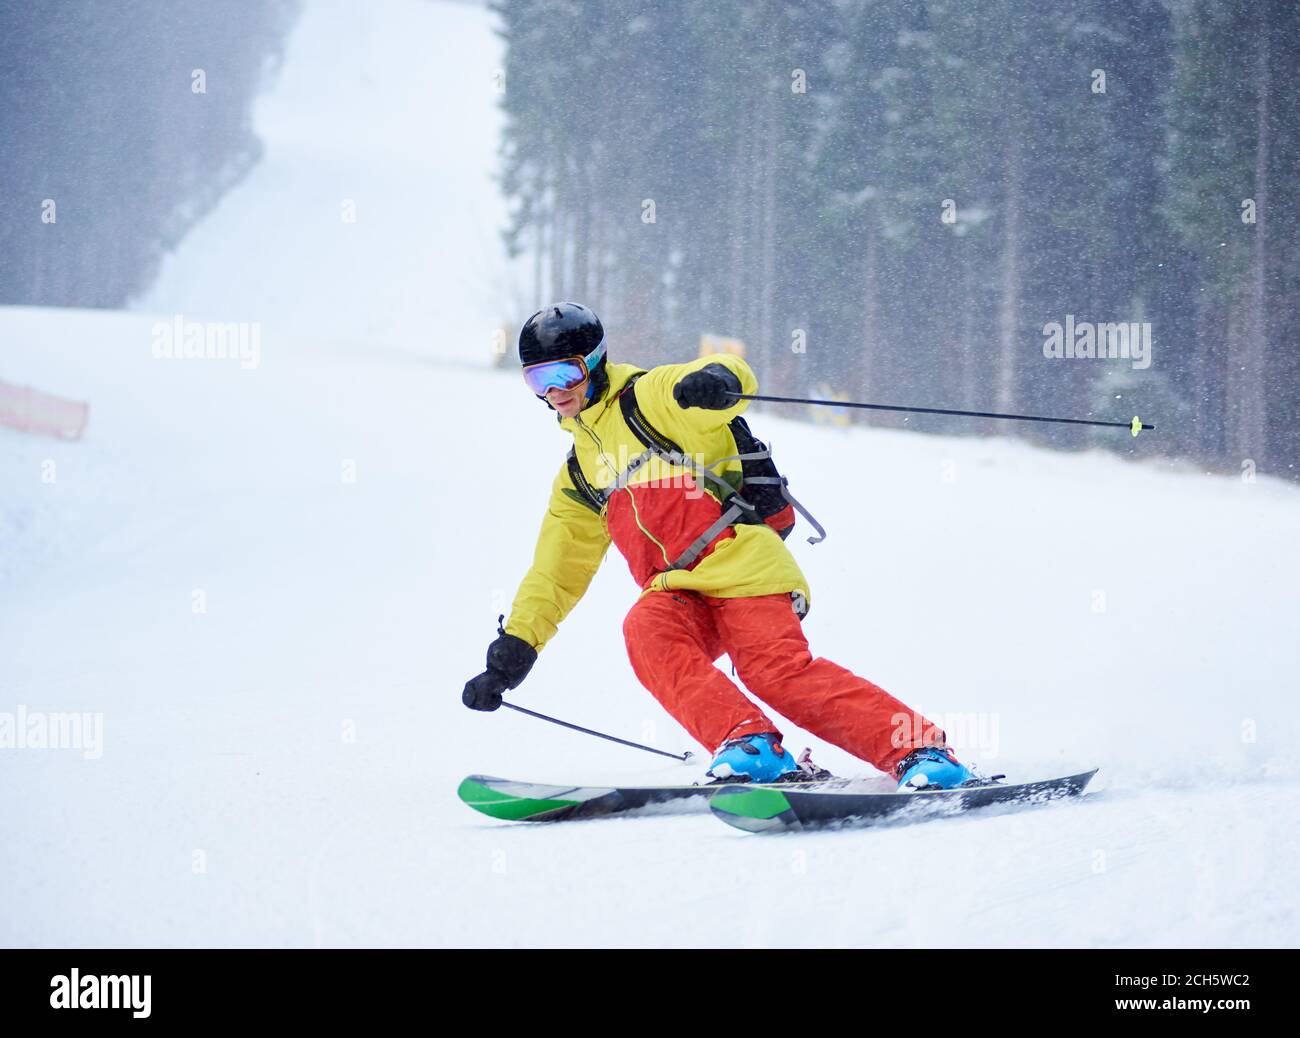 Vorderansicht des jungen männlichen Skifahrers Abfahrtsski und tun Carve Turn auf hohen schneebedeckten Hang. Skifahren bei Schneefall in den Bergen. Einfache Abfahrt. Winter nebligen Hintergrund. Aktives sportliches Lifestyle-Konzept. Stockfoto